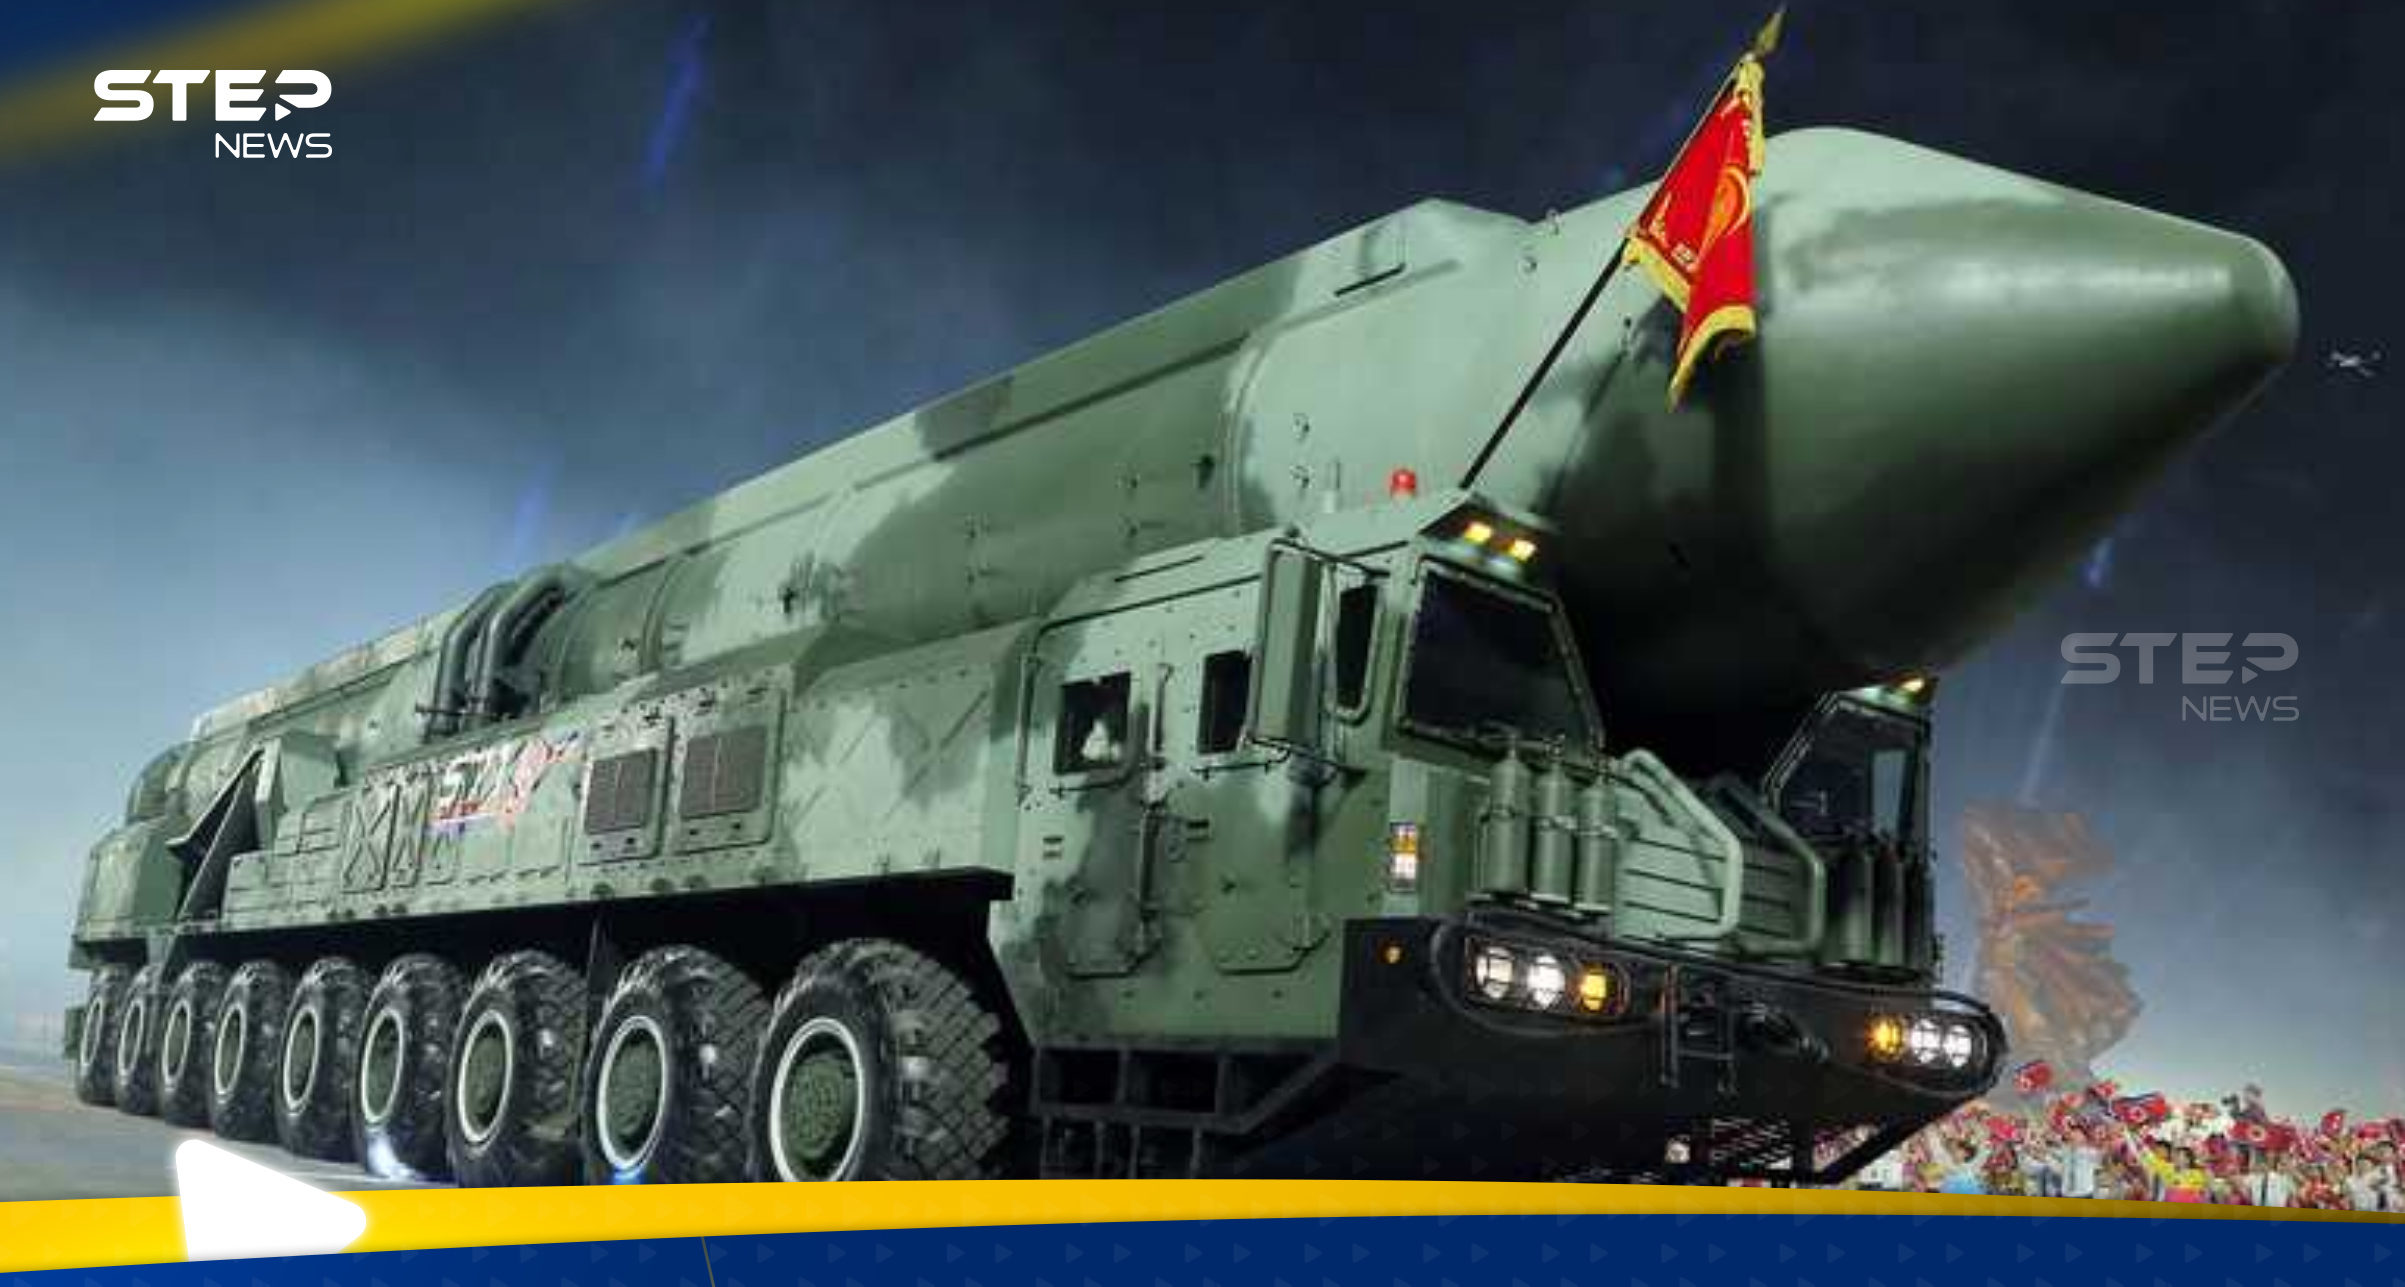 كوريا الشمالية تعلن عن صاروخ جديد أسرع من الصوت وكيم يوجه رسالة "للأعداء"